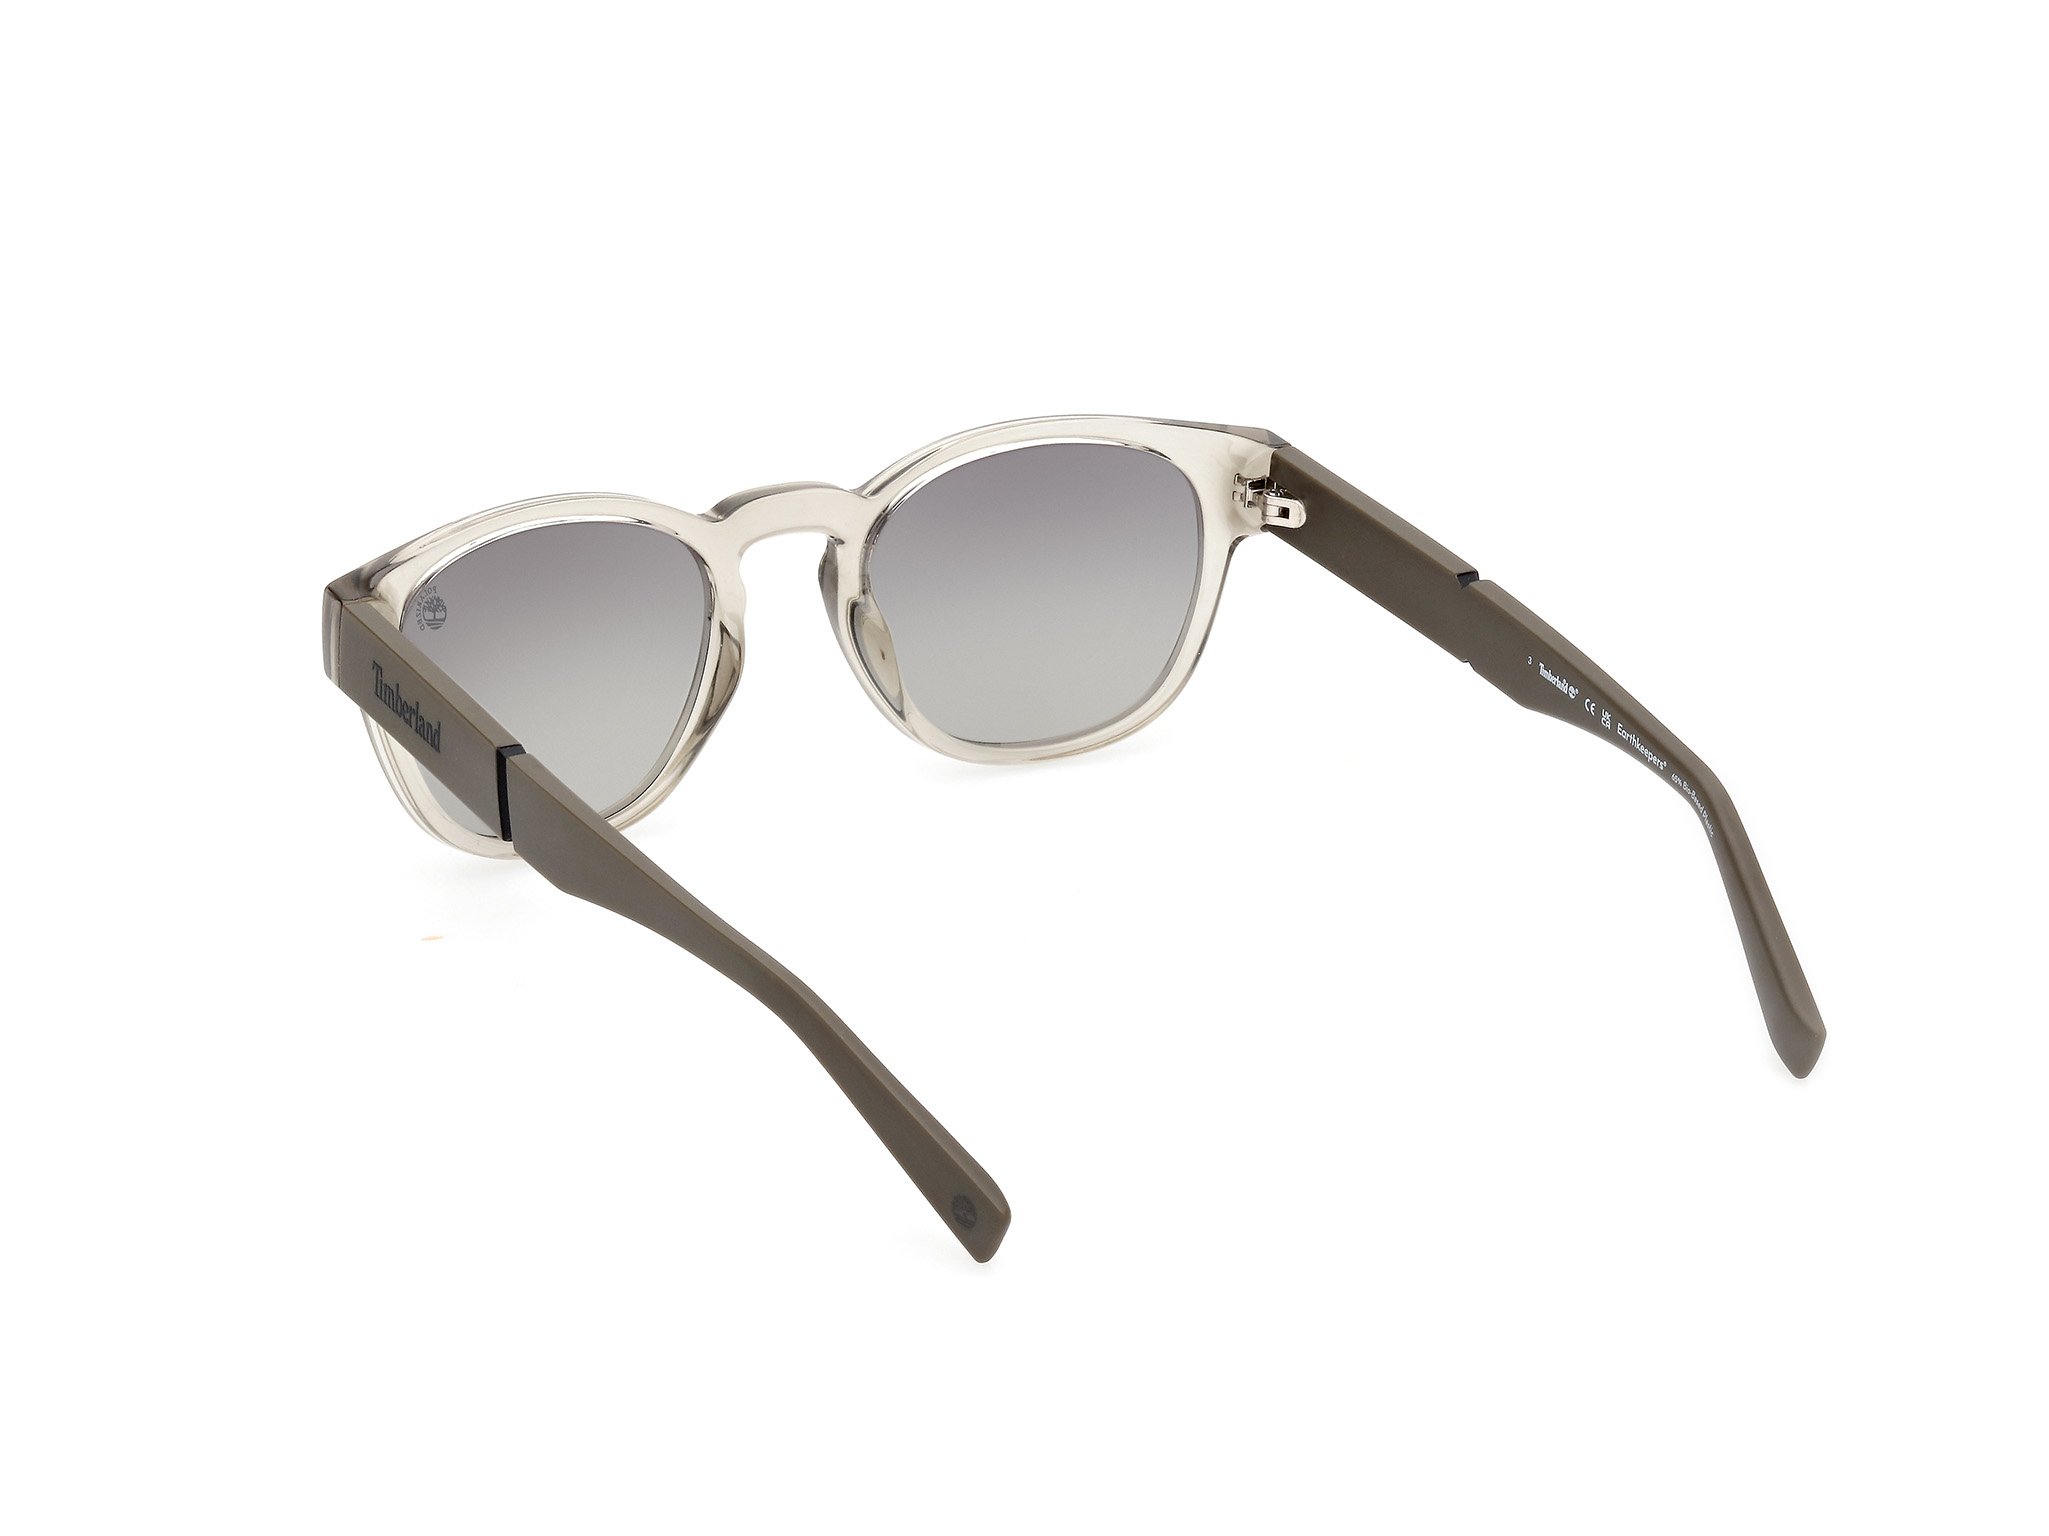 Das Bild zeigt die Sonnenbrille TB9334 45D von der Marke Timberland in grau.